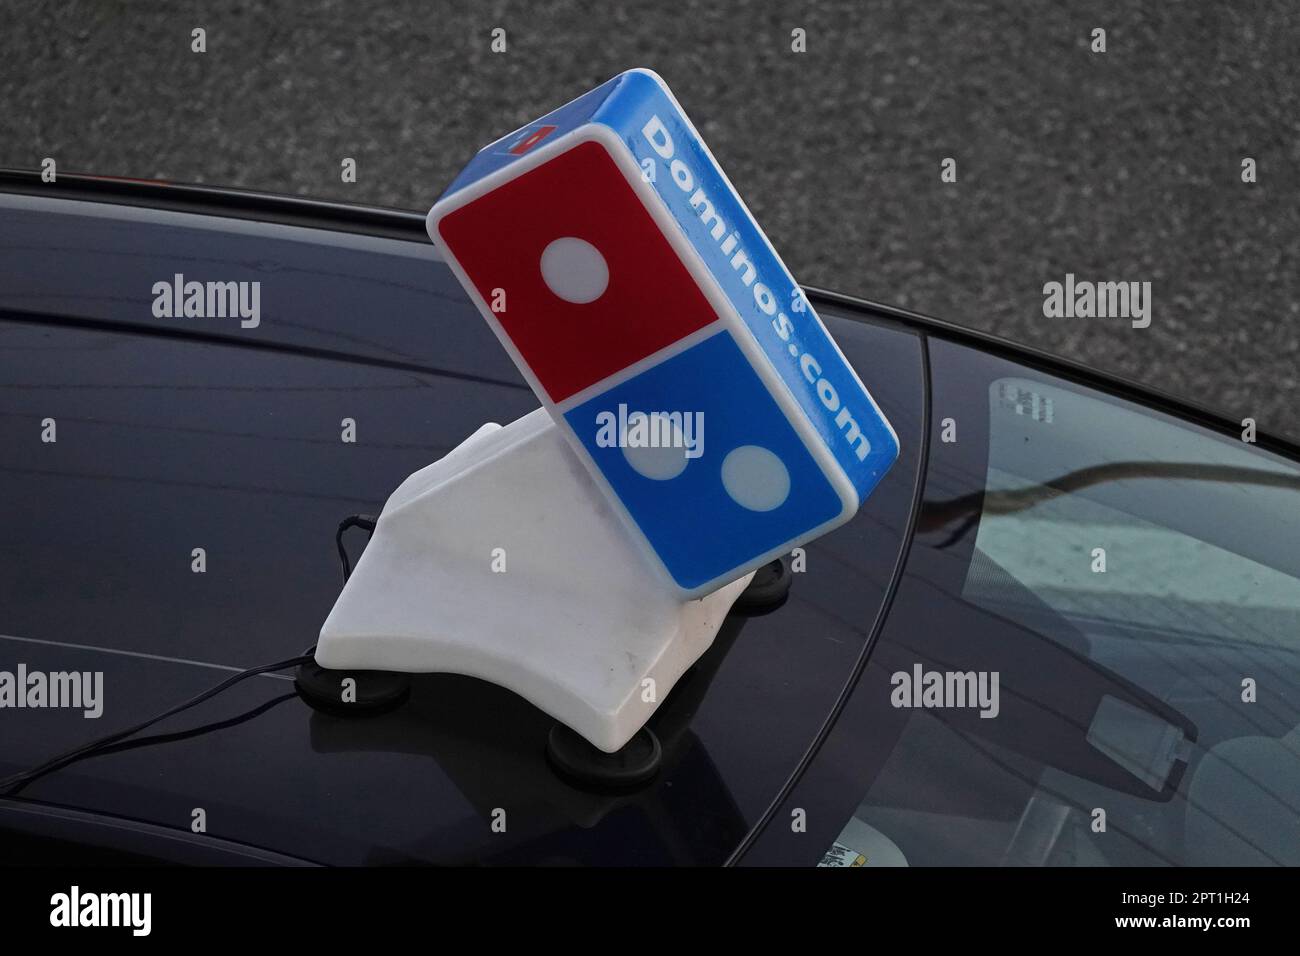 Los Angeles, California / USA - 8 maggio 2020: Un cartello di plastica Dominos Pizza sul tetto, pubblicizzando dominos.com, è in cima ad una vettura di consegna durante il giorno. Foto Stock